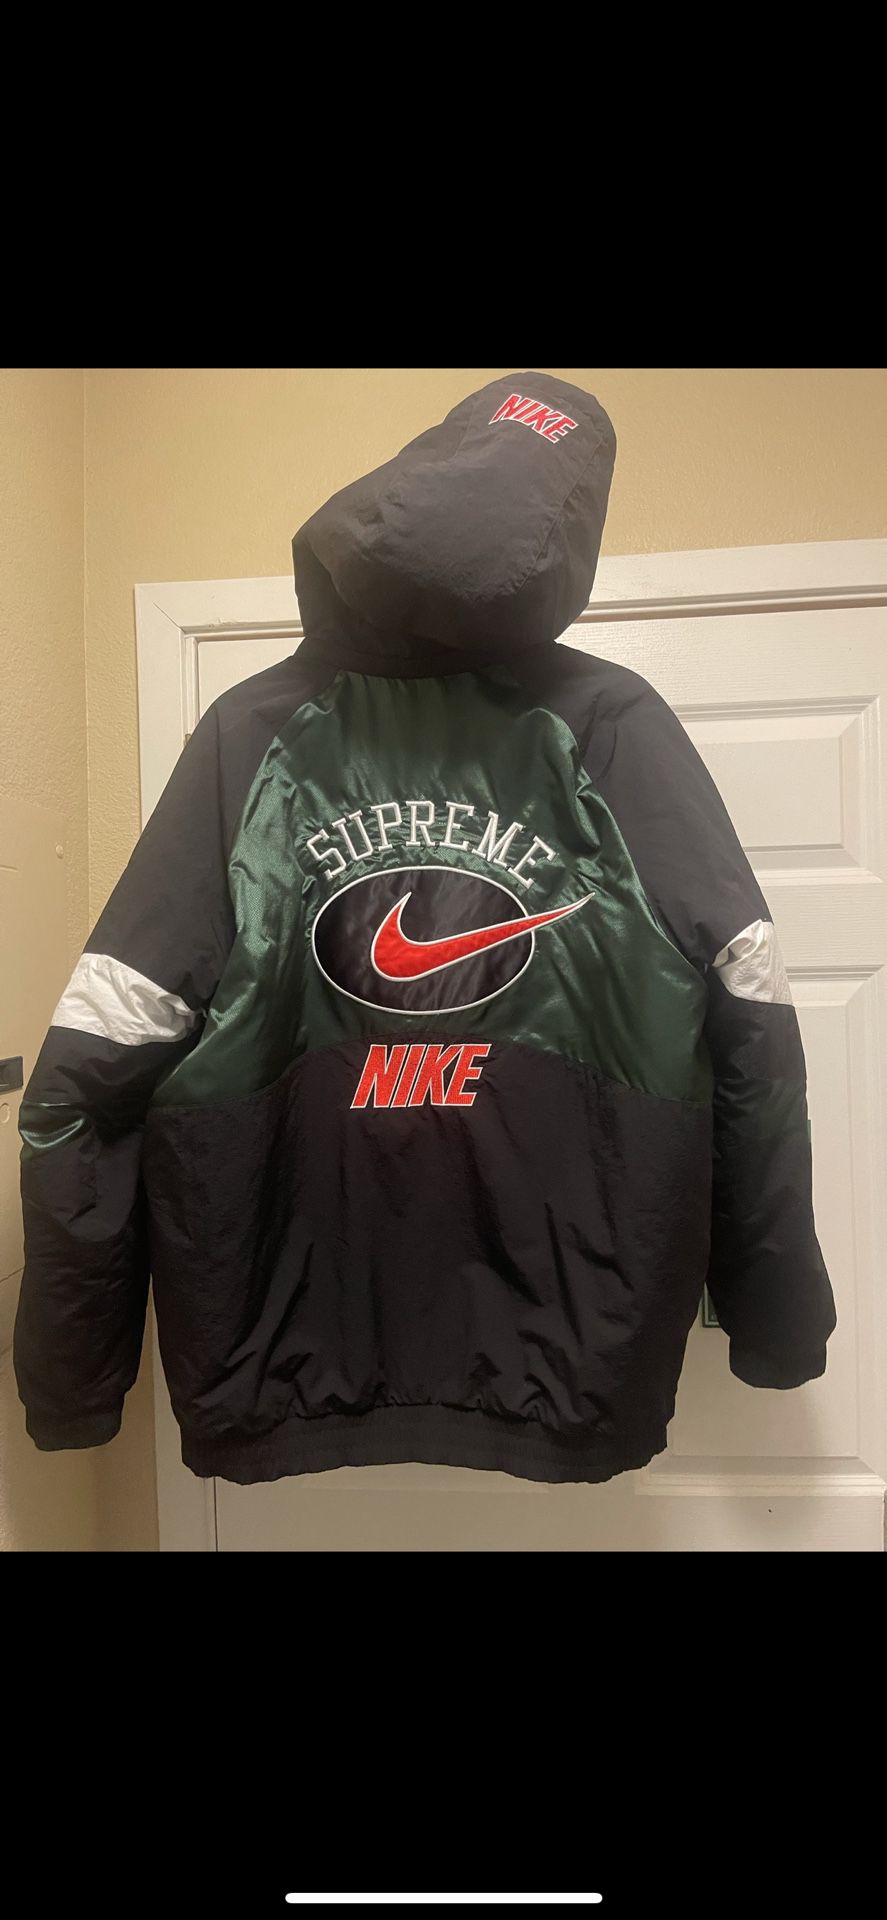 Supreme Jacket 💯💯 Shoot Offer